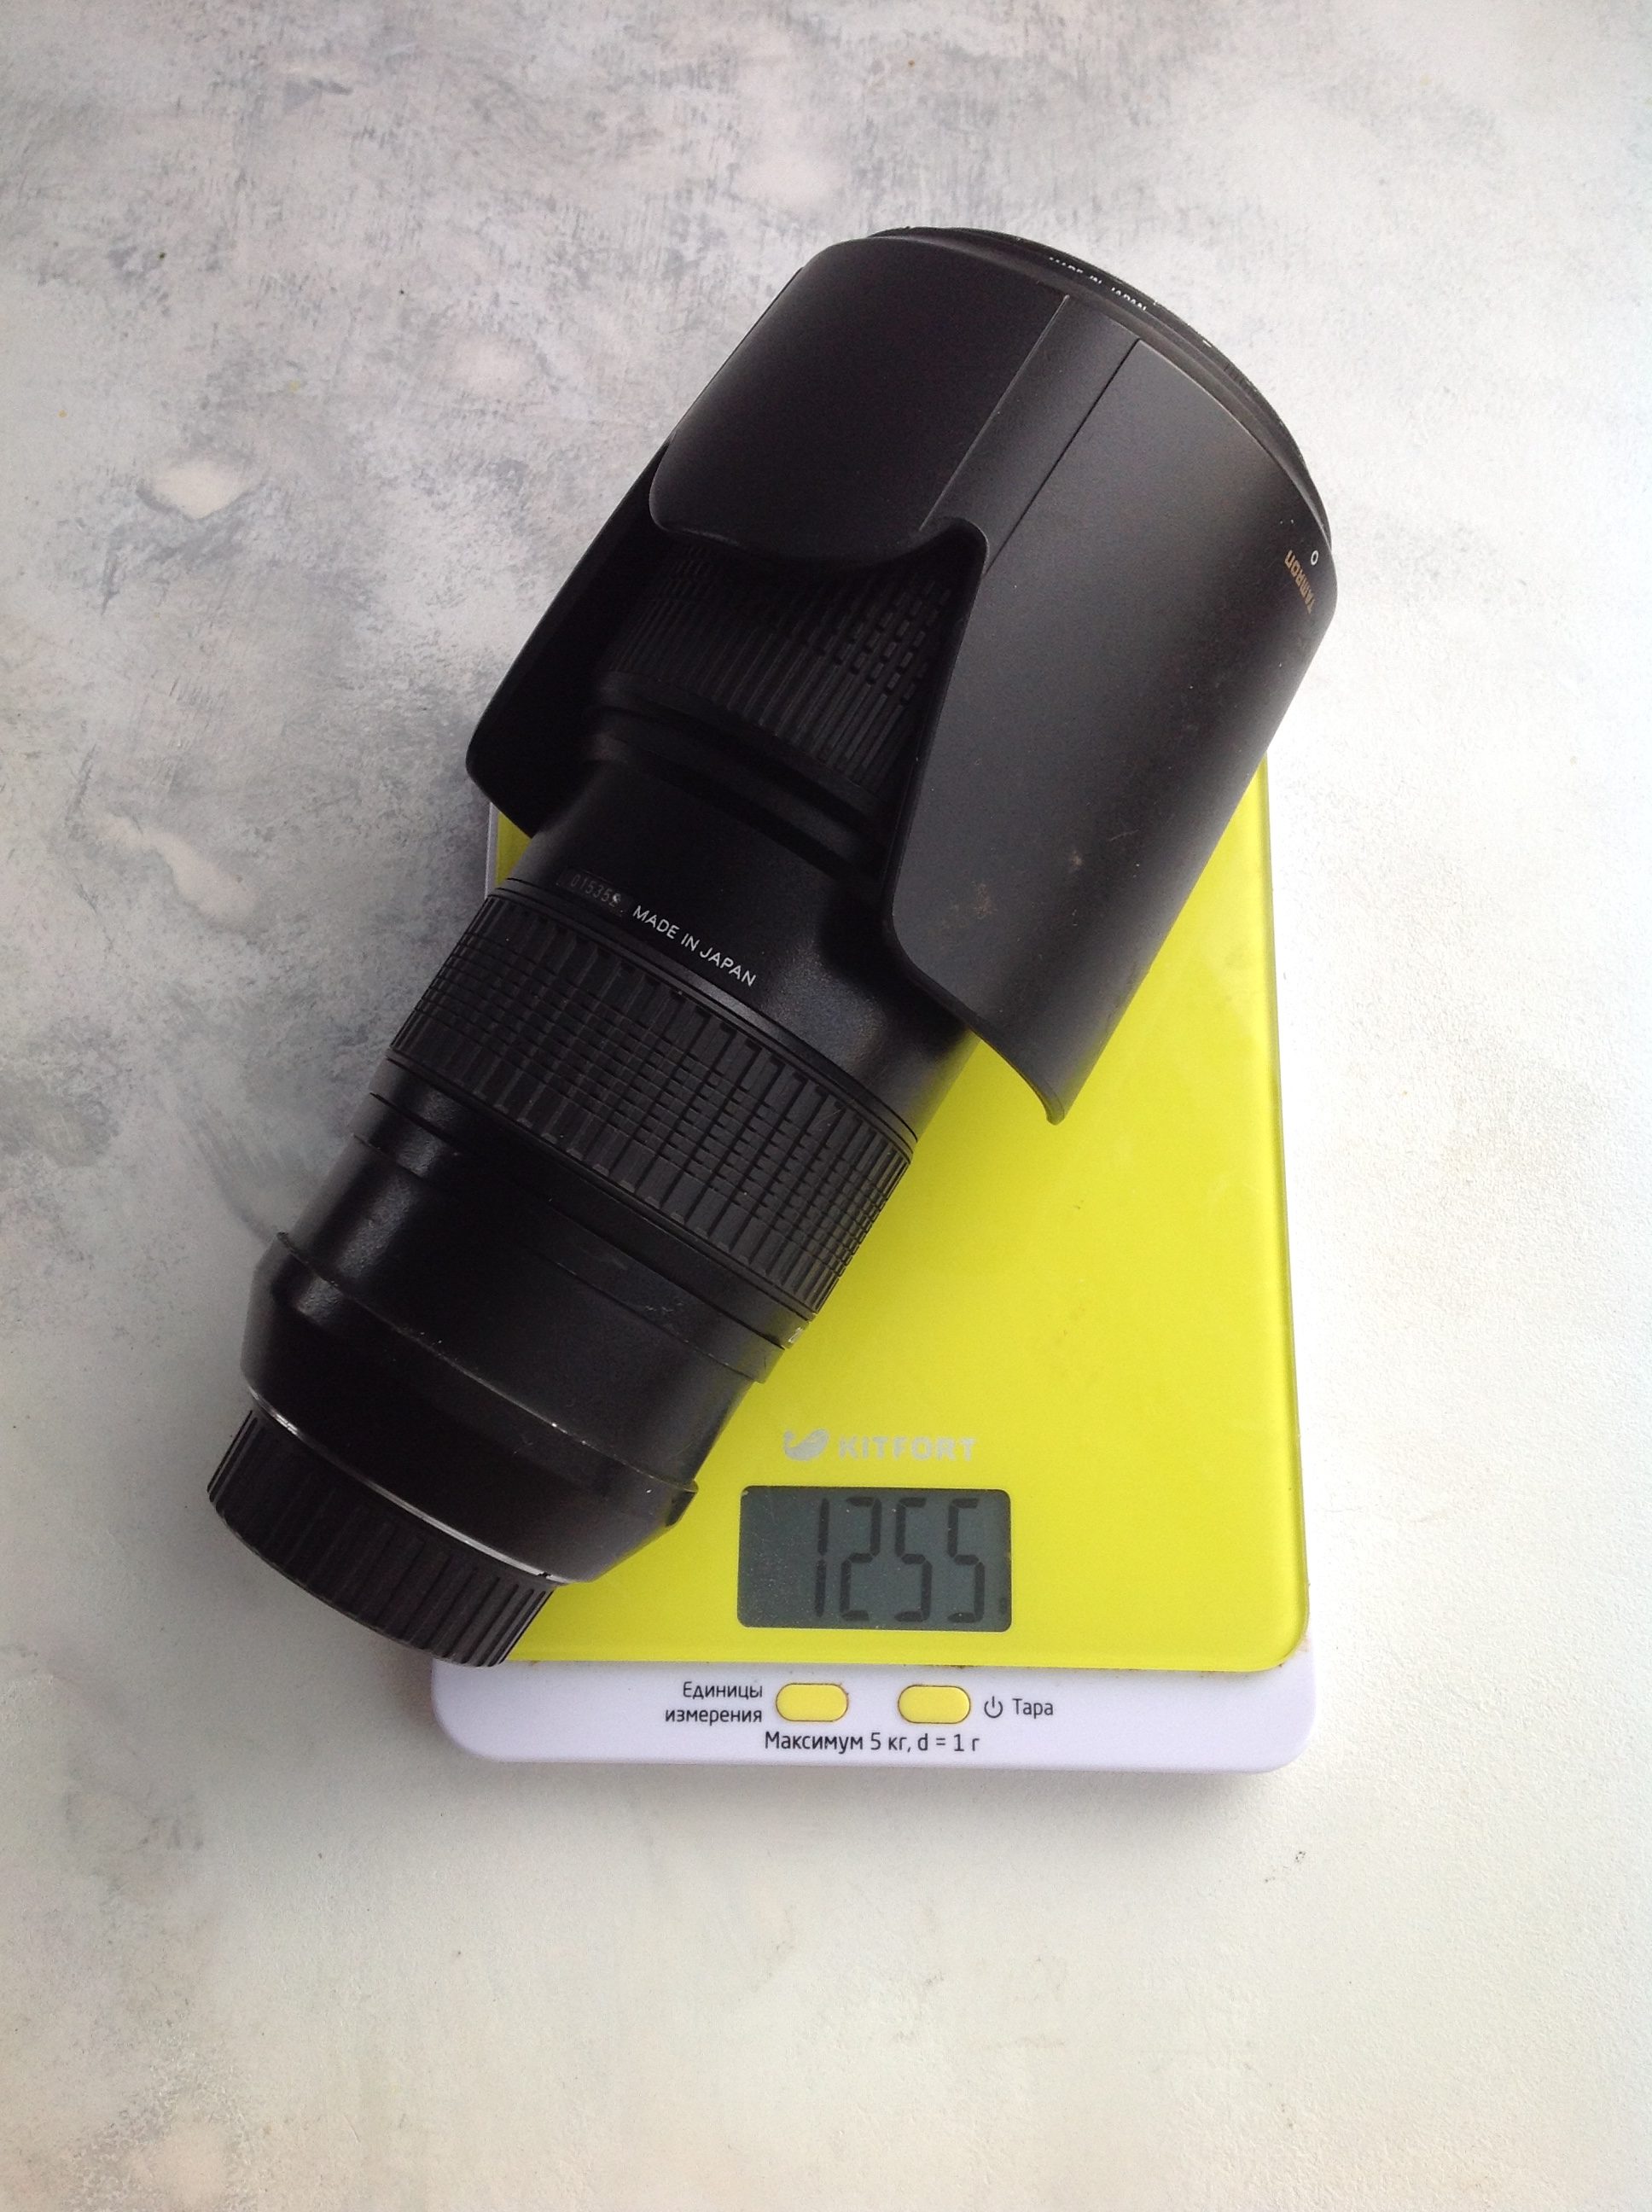 Gewicht des Fotoobjektivs Tamron 70-200 2.8